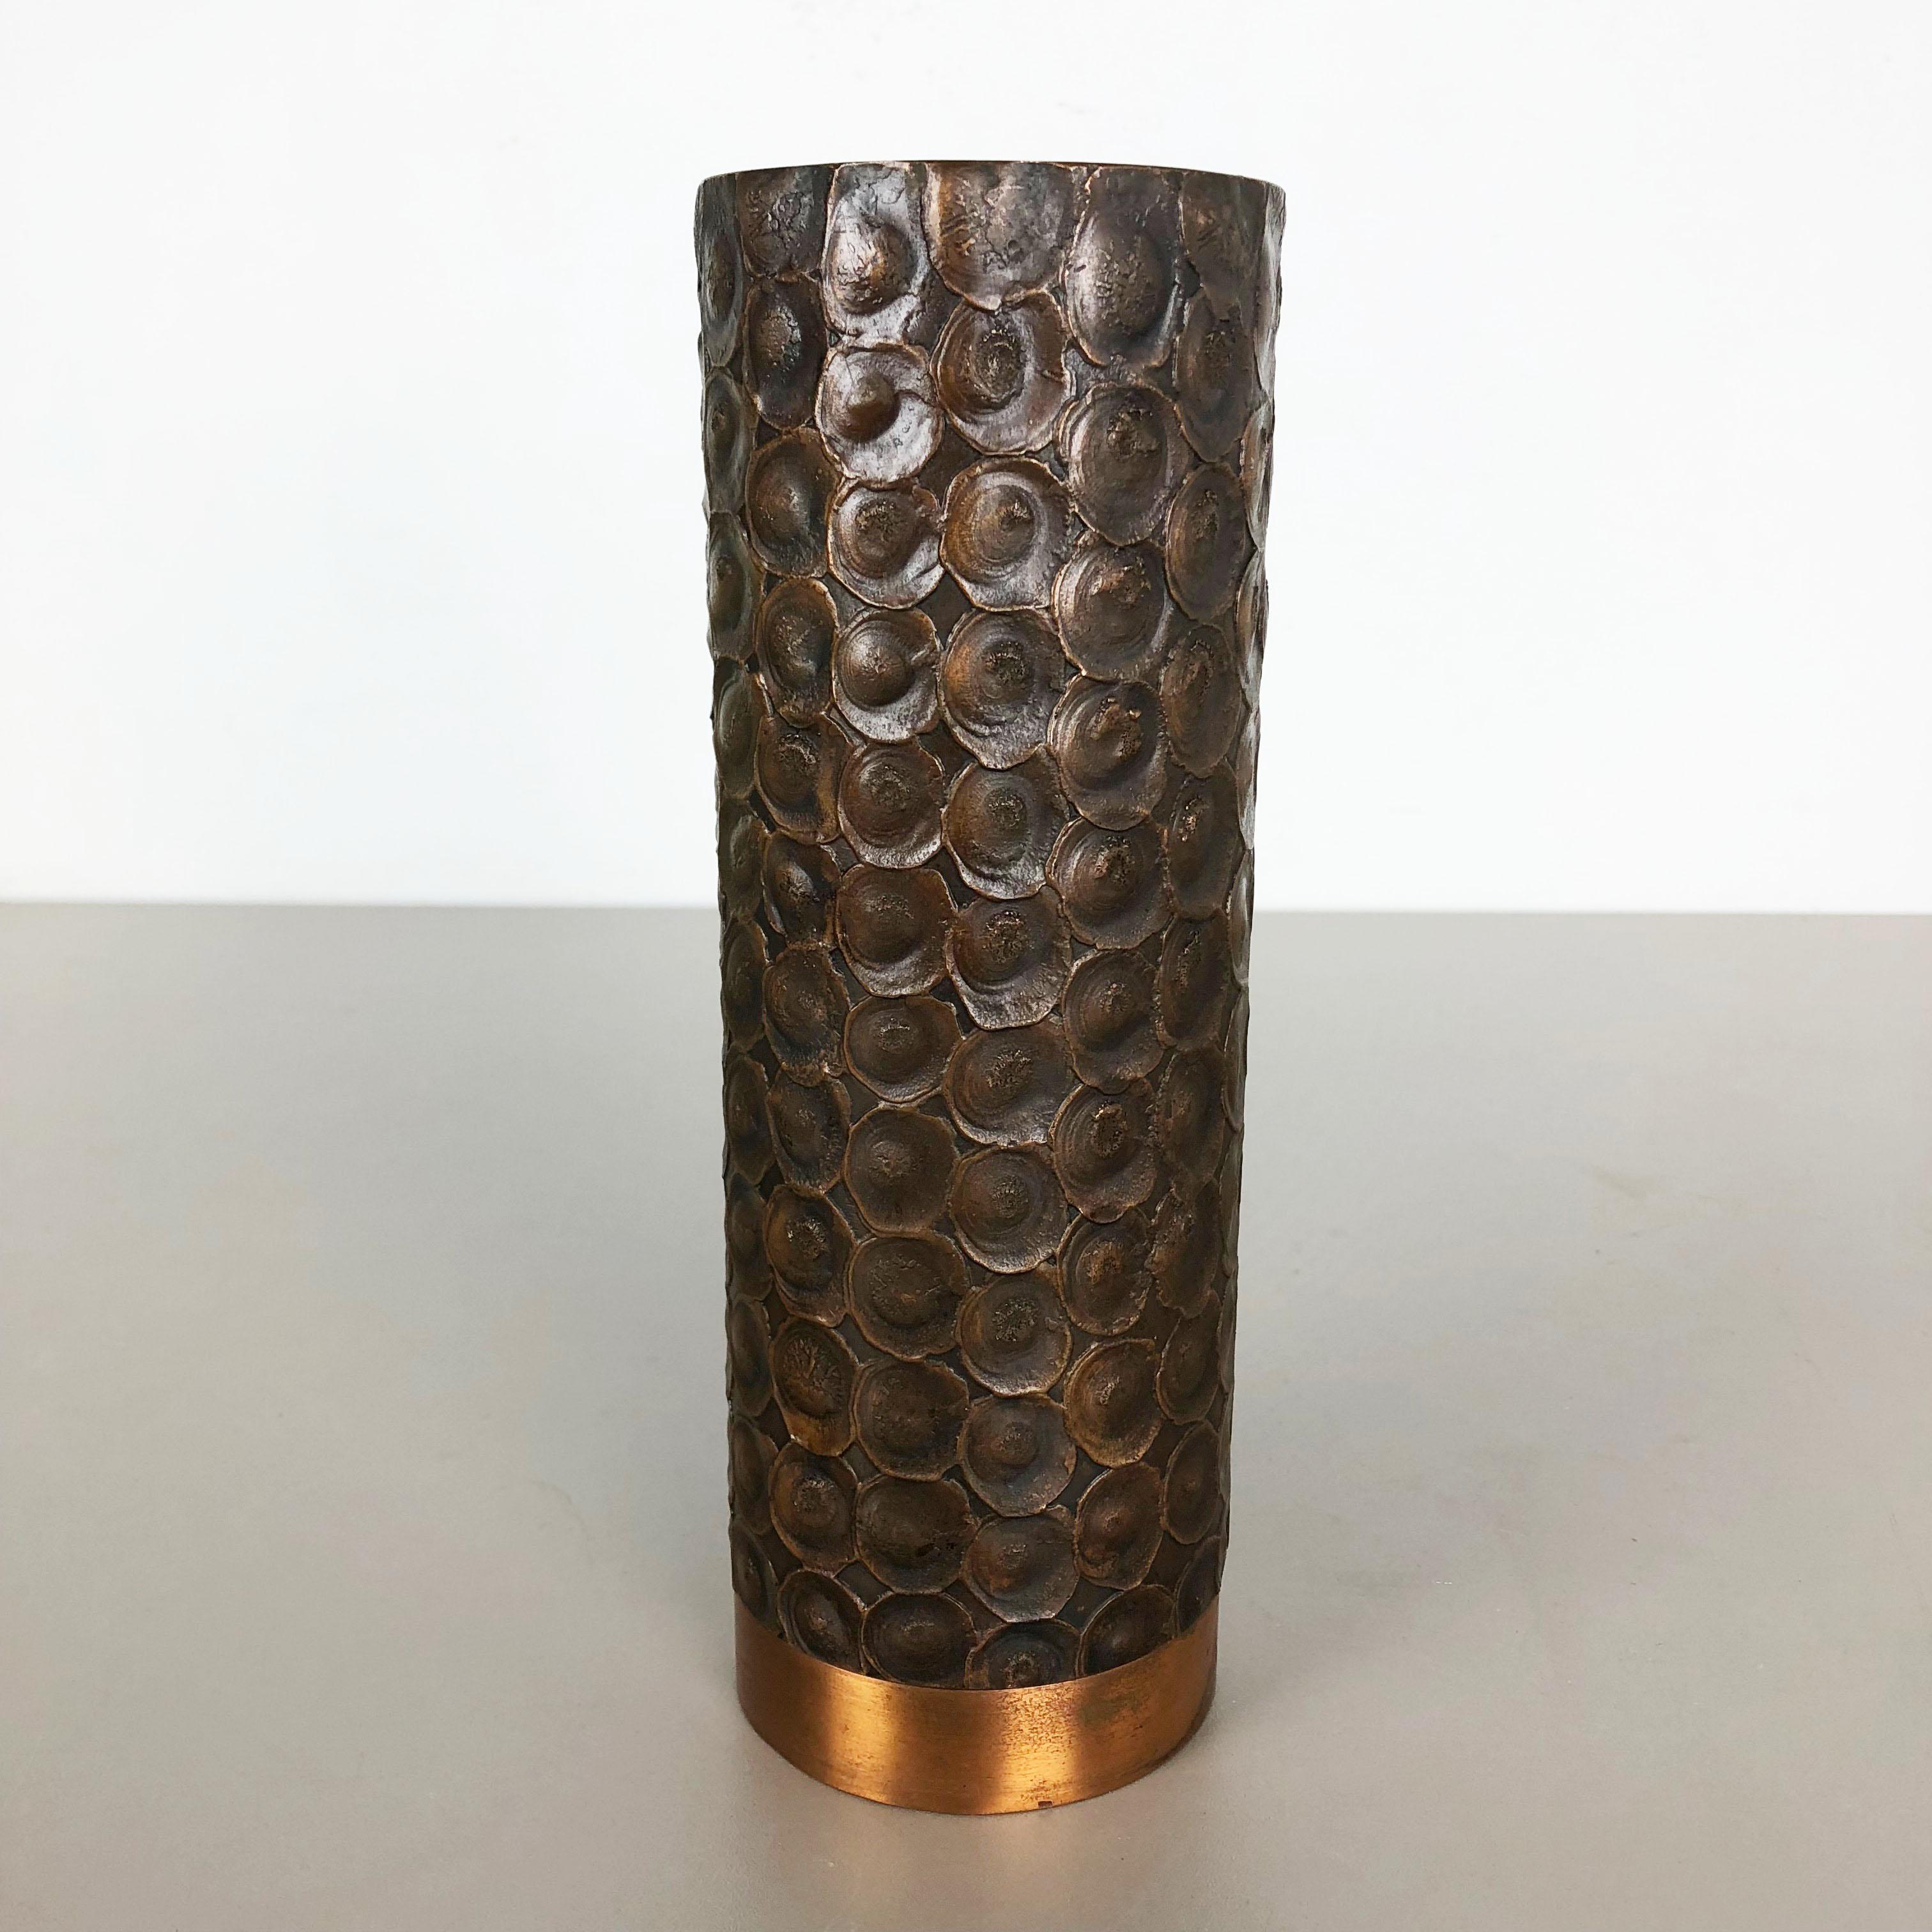 Modernist Sculptural Brutalist Copper Vase, Austria, 1950s For Sale 6